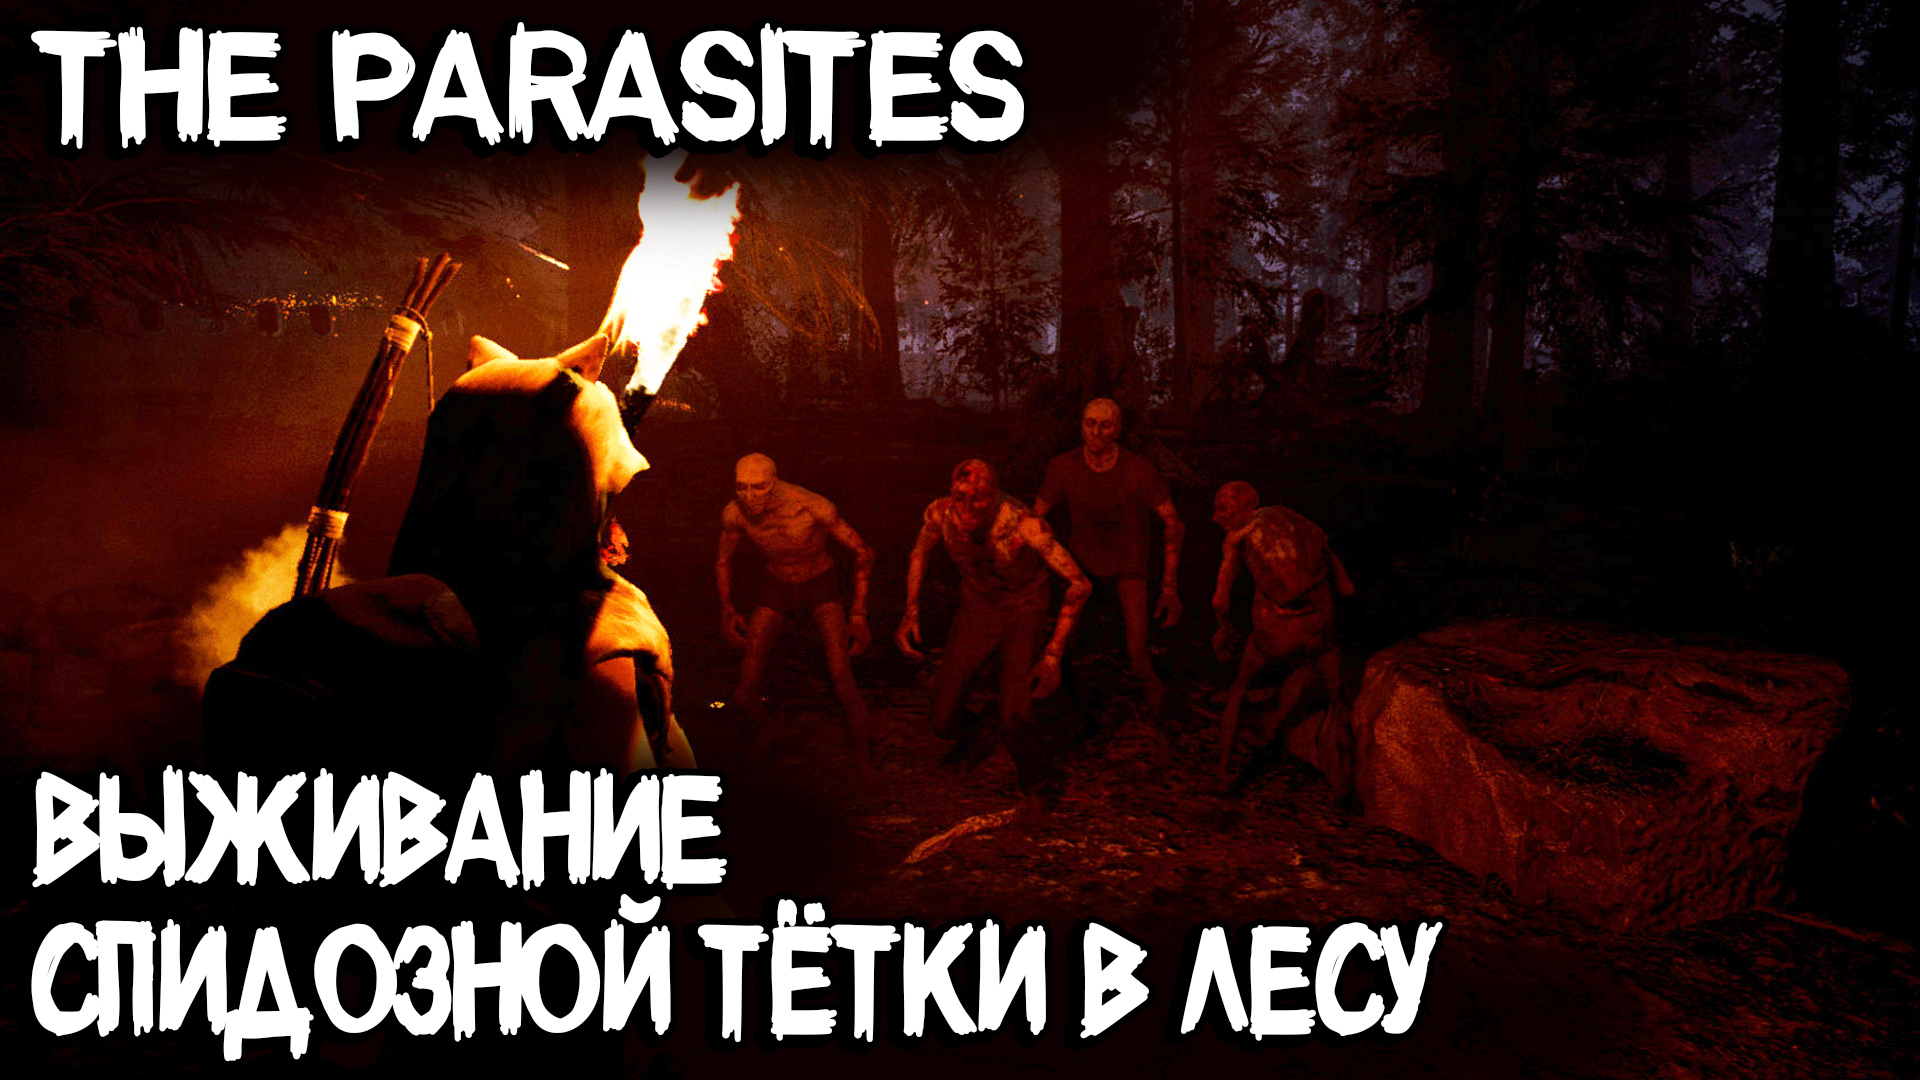 The Parasites - обзор демки и выживание гулящей девки в лесу среди мутантов